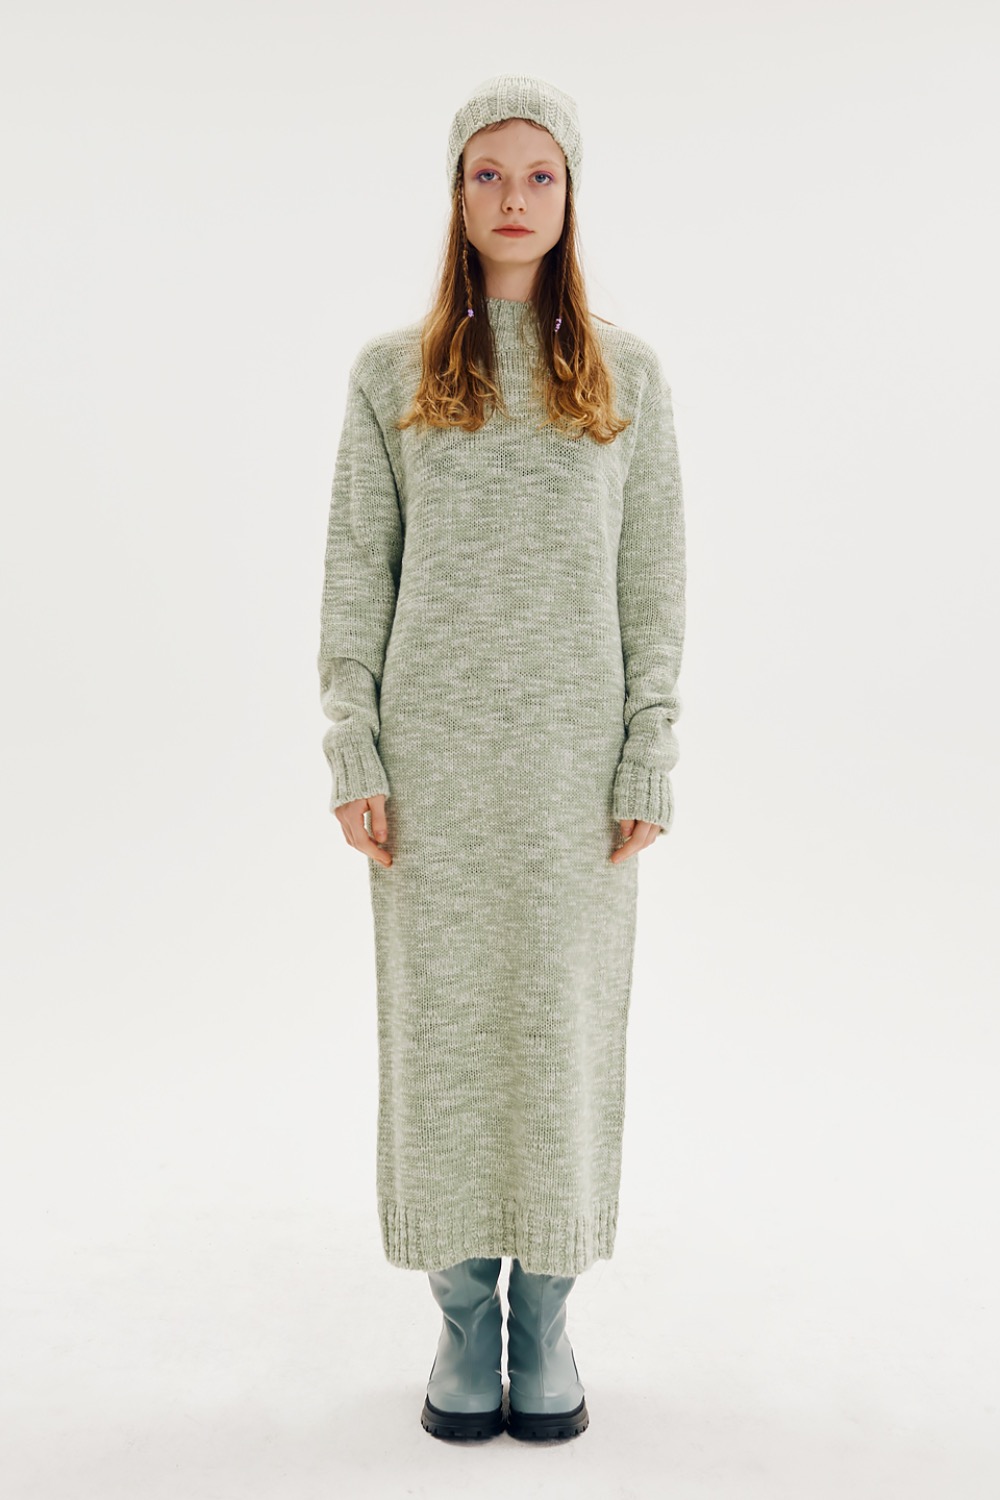 Eastern Long Knit-dress [Mint]